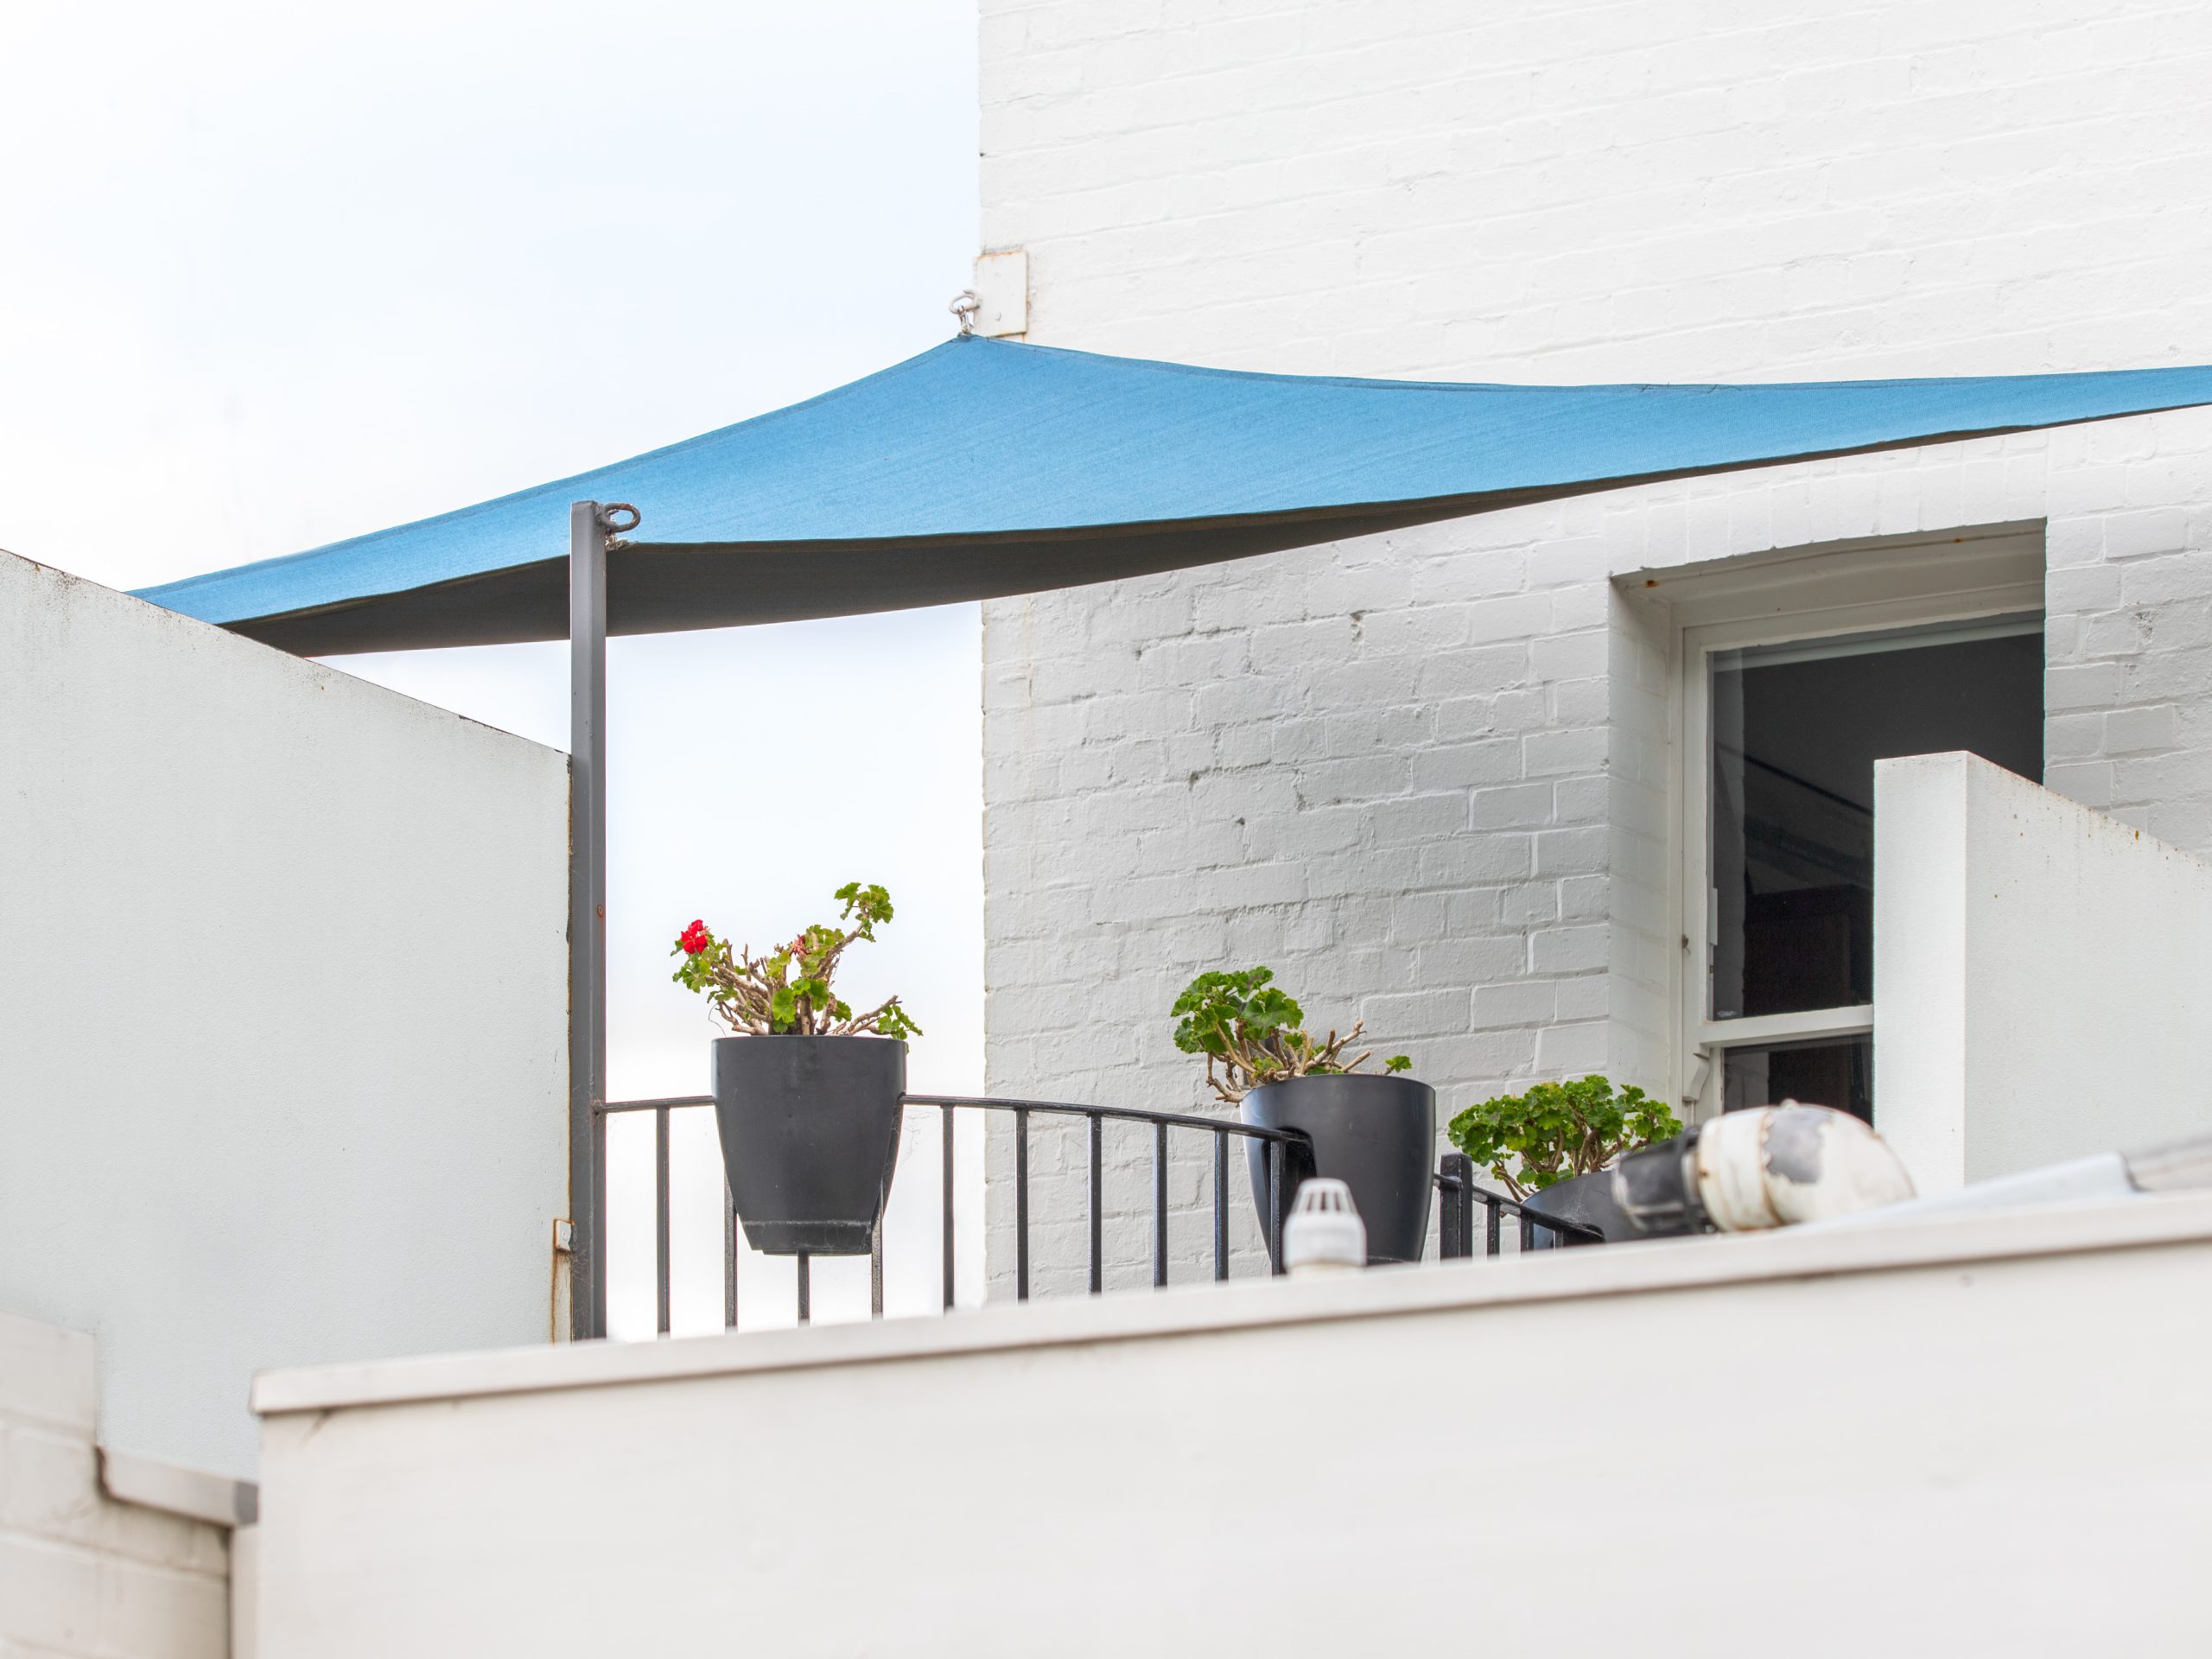 Apartamento garden: varanda com ombrelone azul